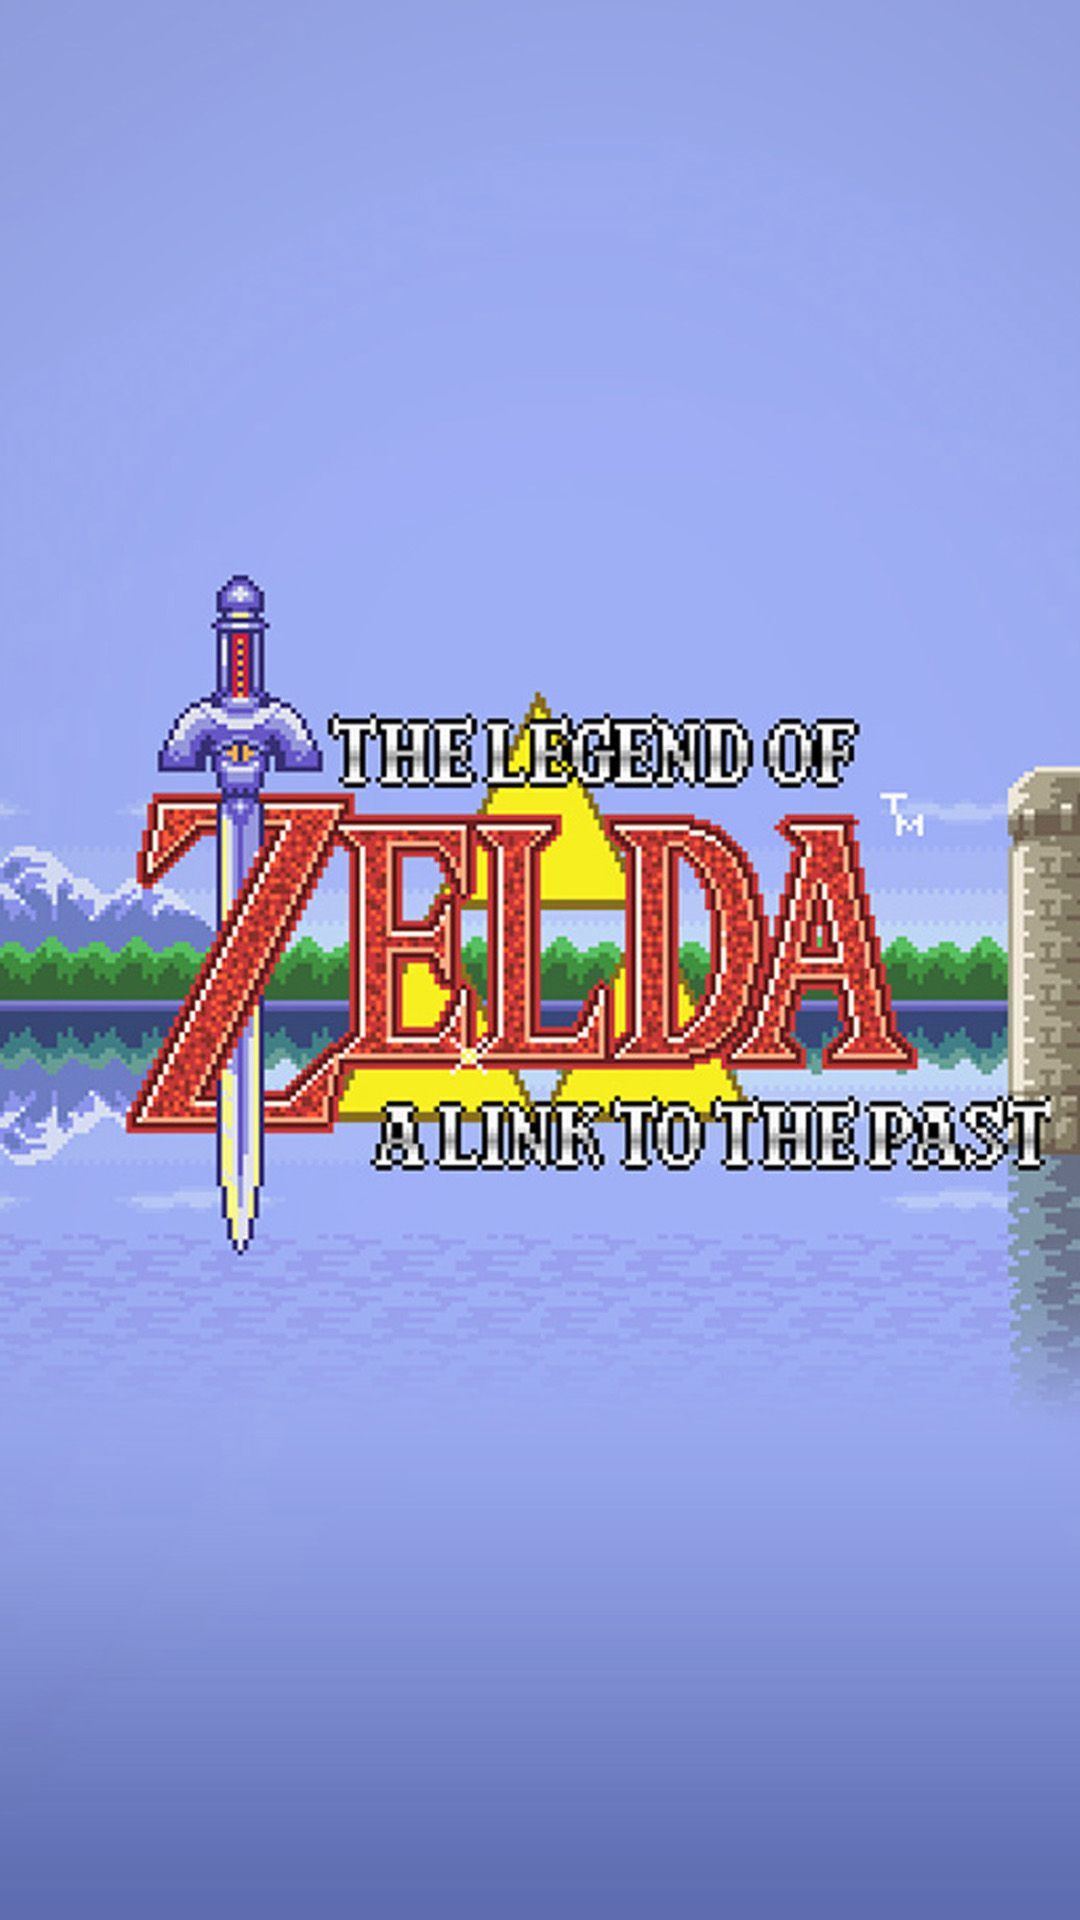 Zelda-02-wallpaper.jpg